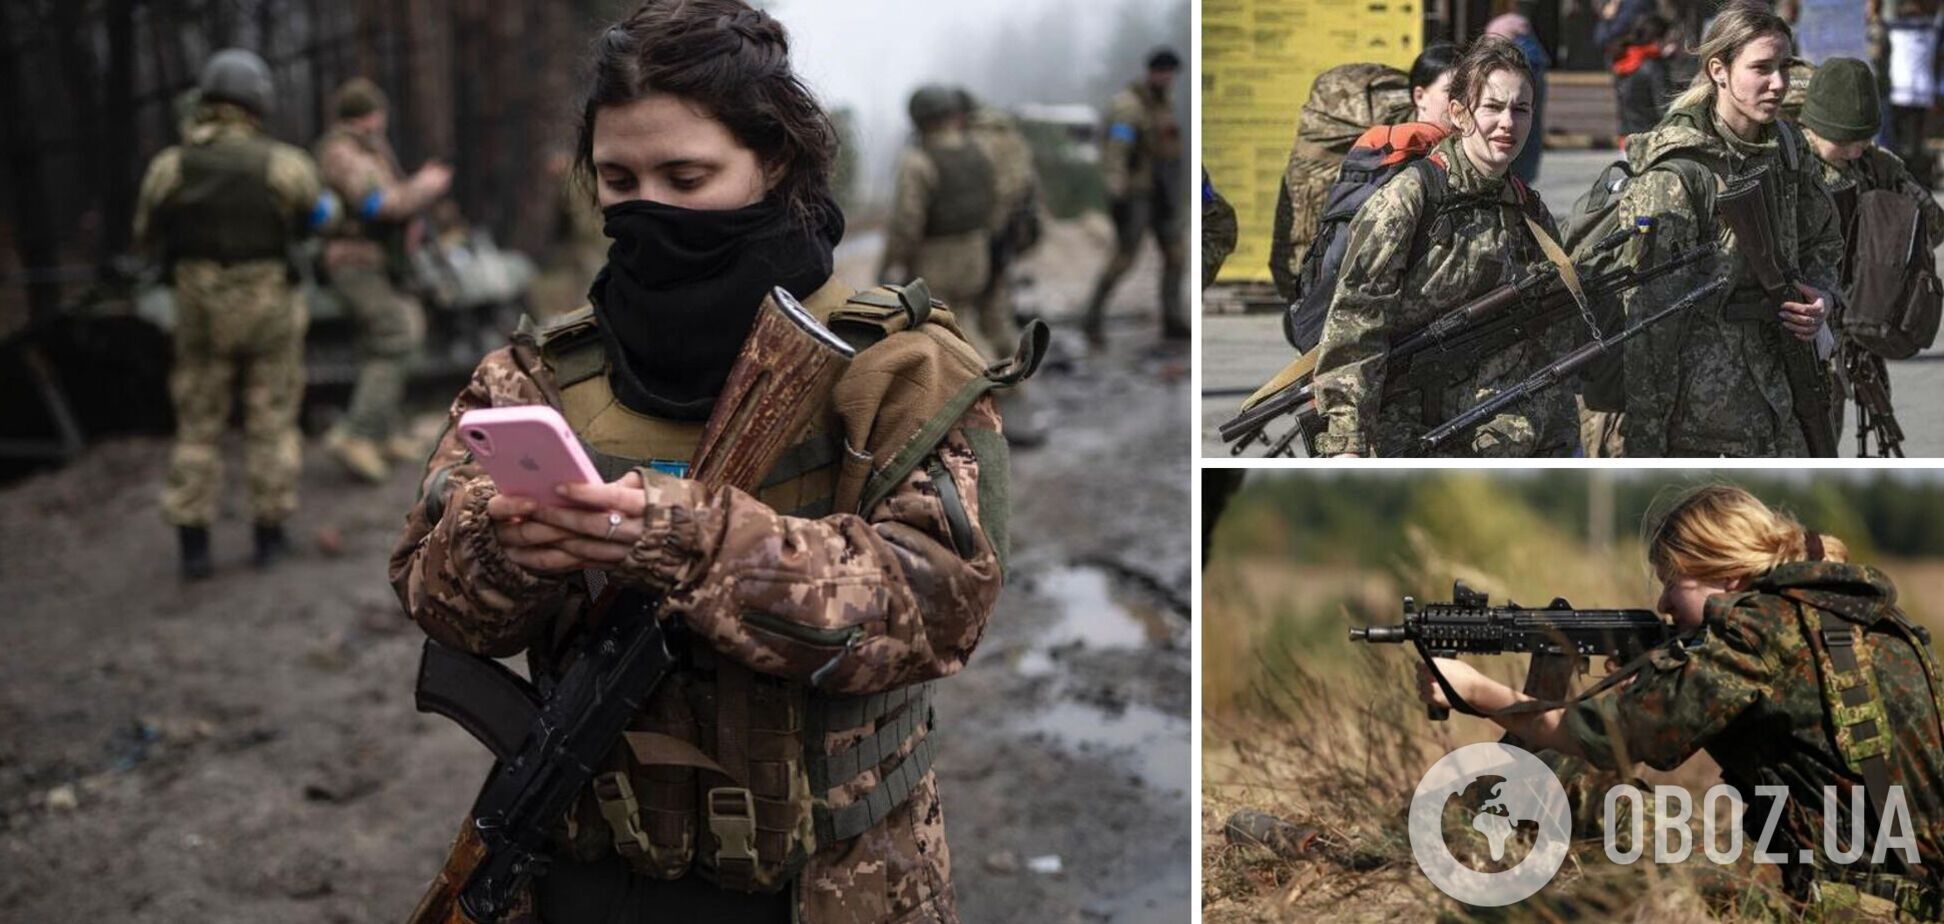 'Несокрушимые встали на защиту Украины с оружием в руках': в Генштабе поздравили женщин с праздником и отметили мужество защитниц